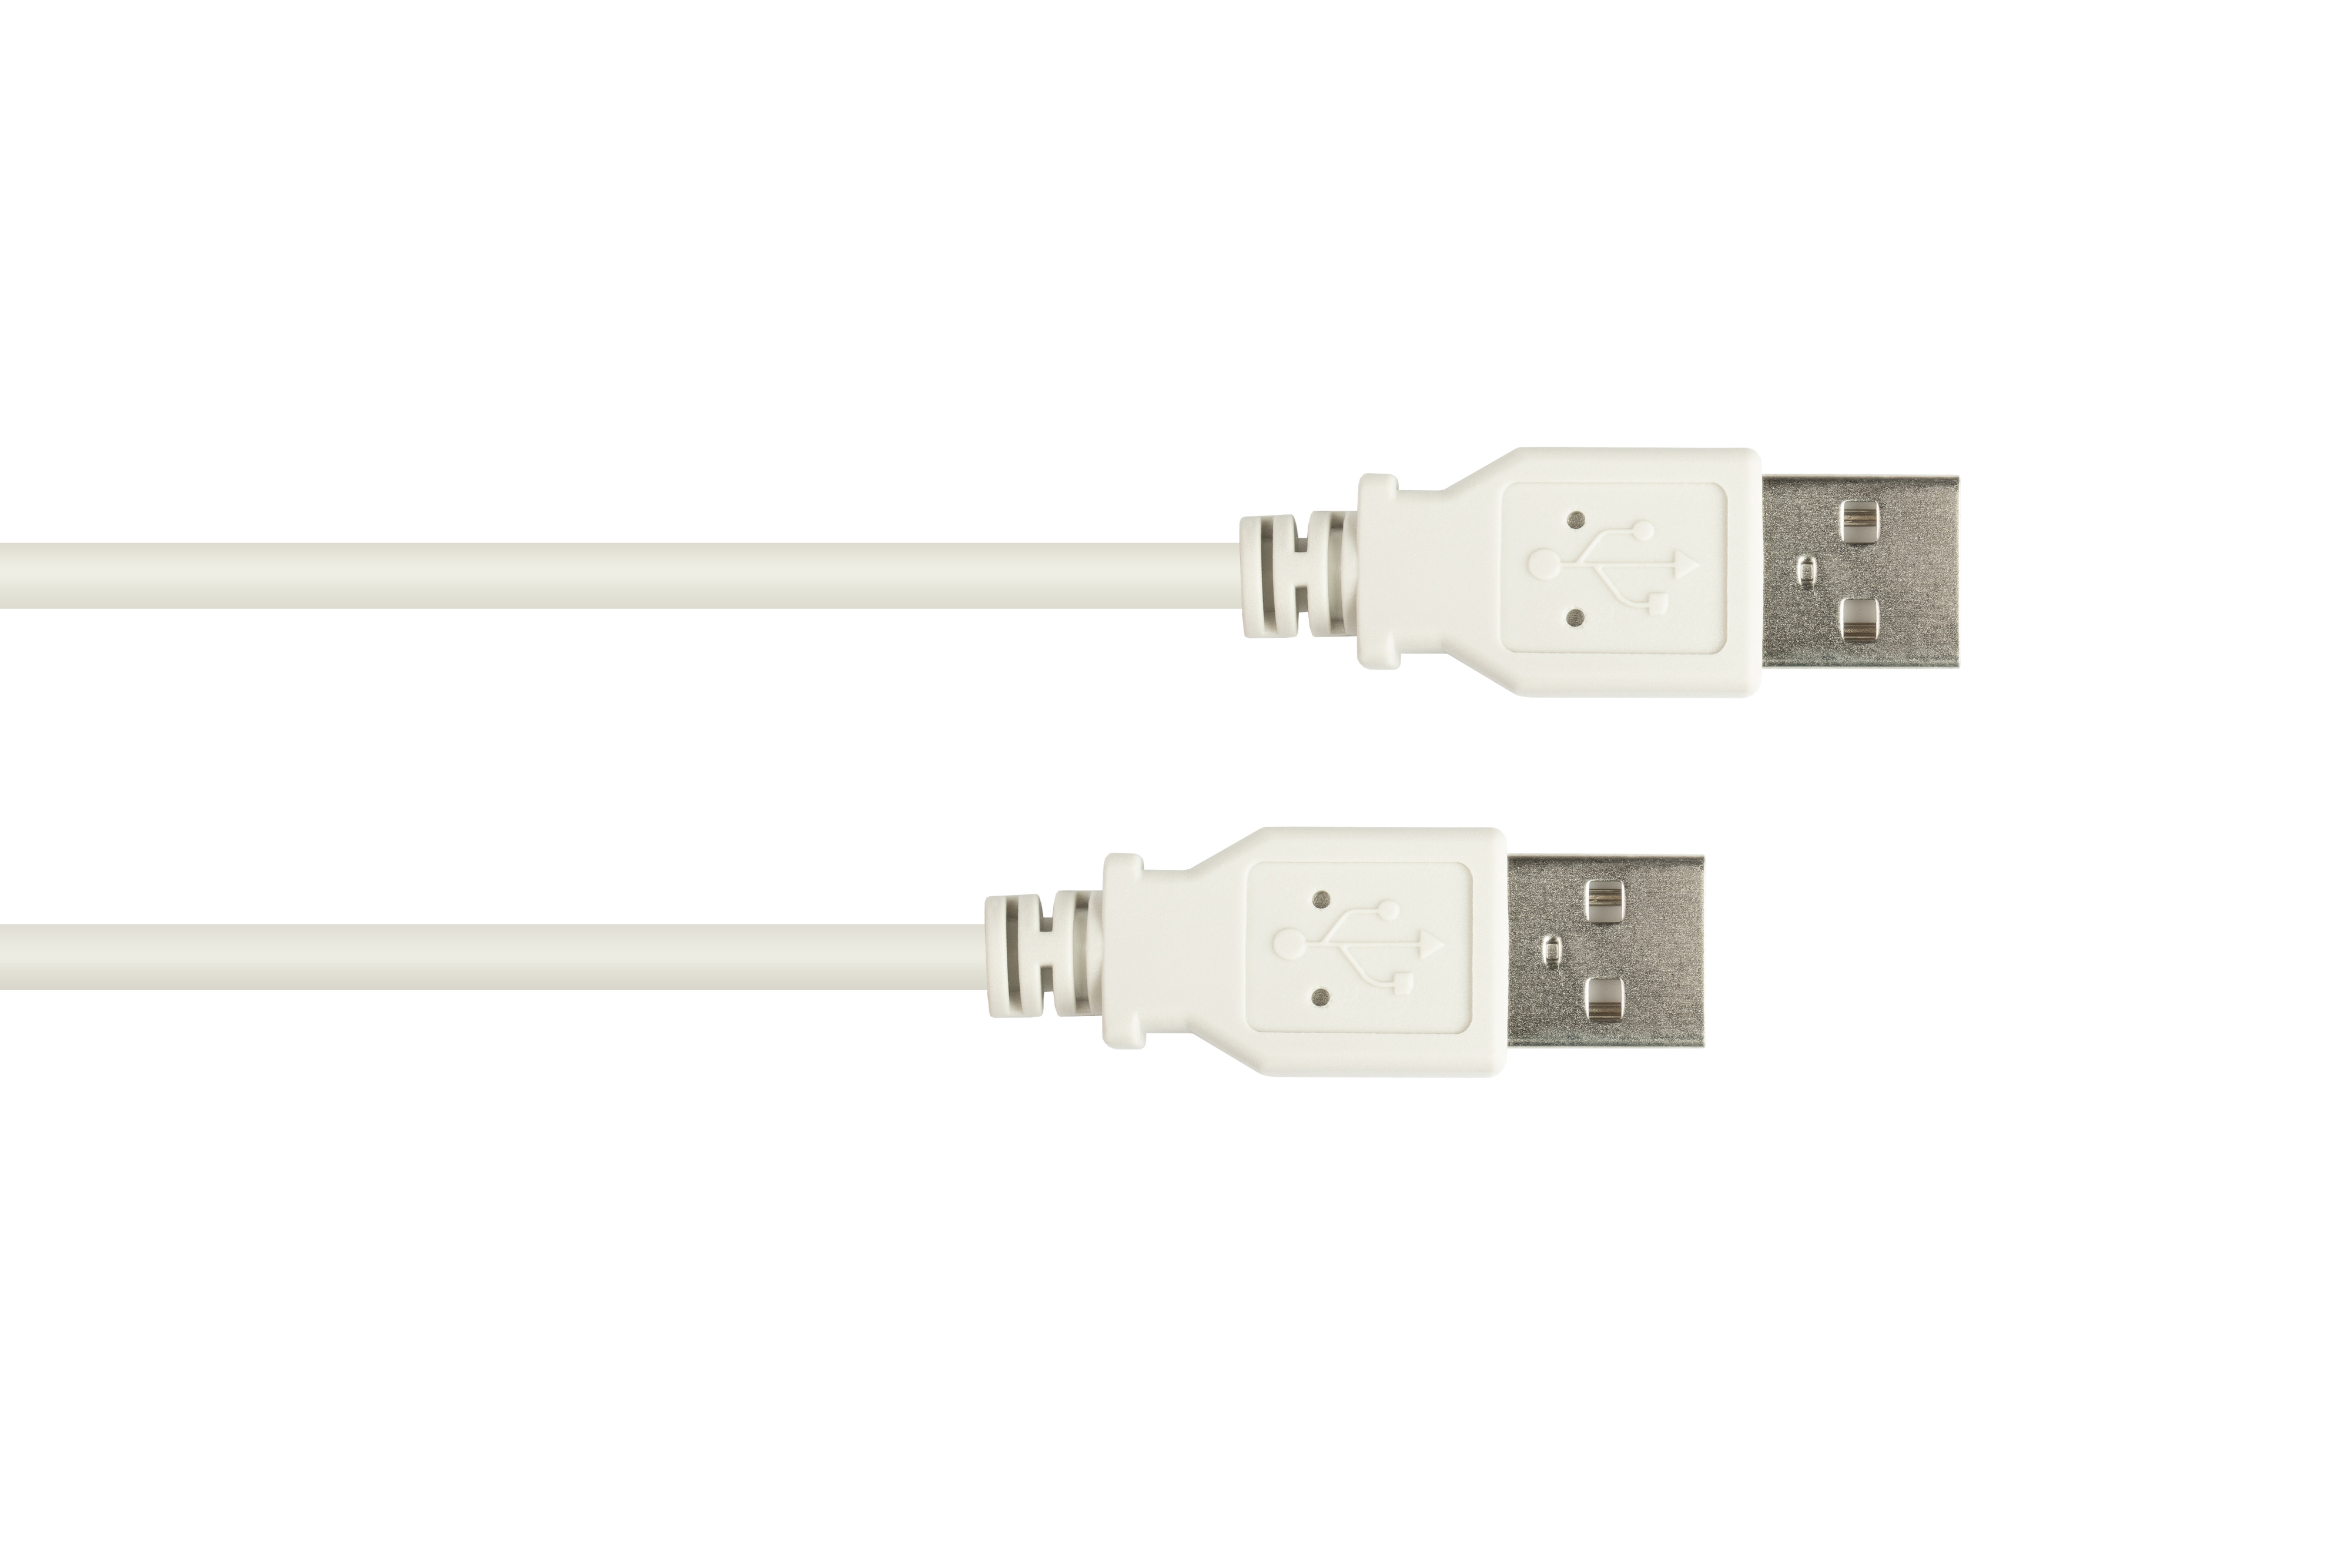 Stecker grau USB 2.0 Stecker A, Anschlusskabel CONNECTIONS A an GOOD